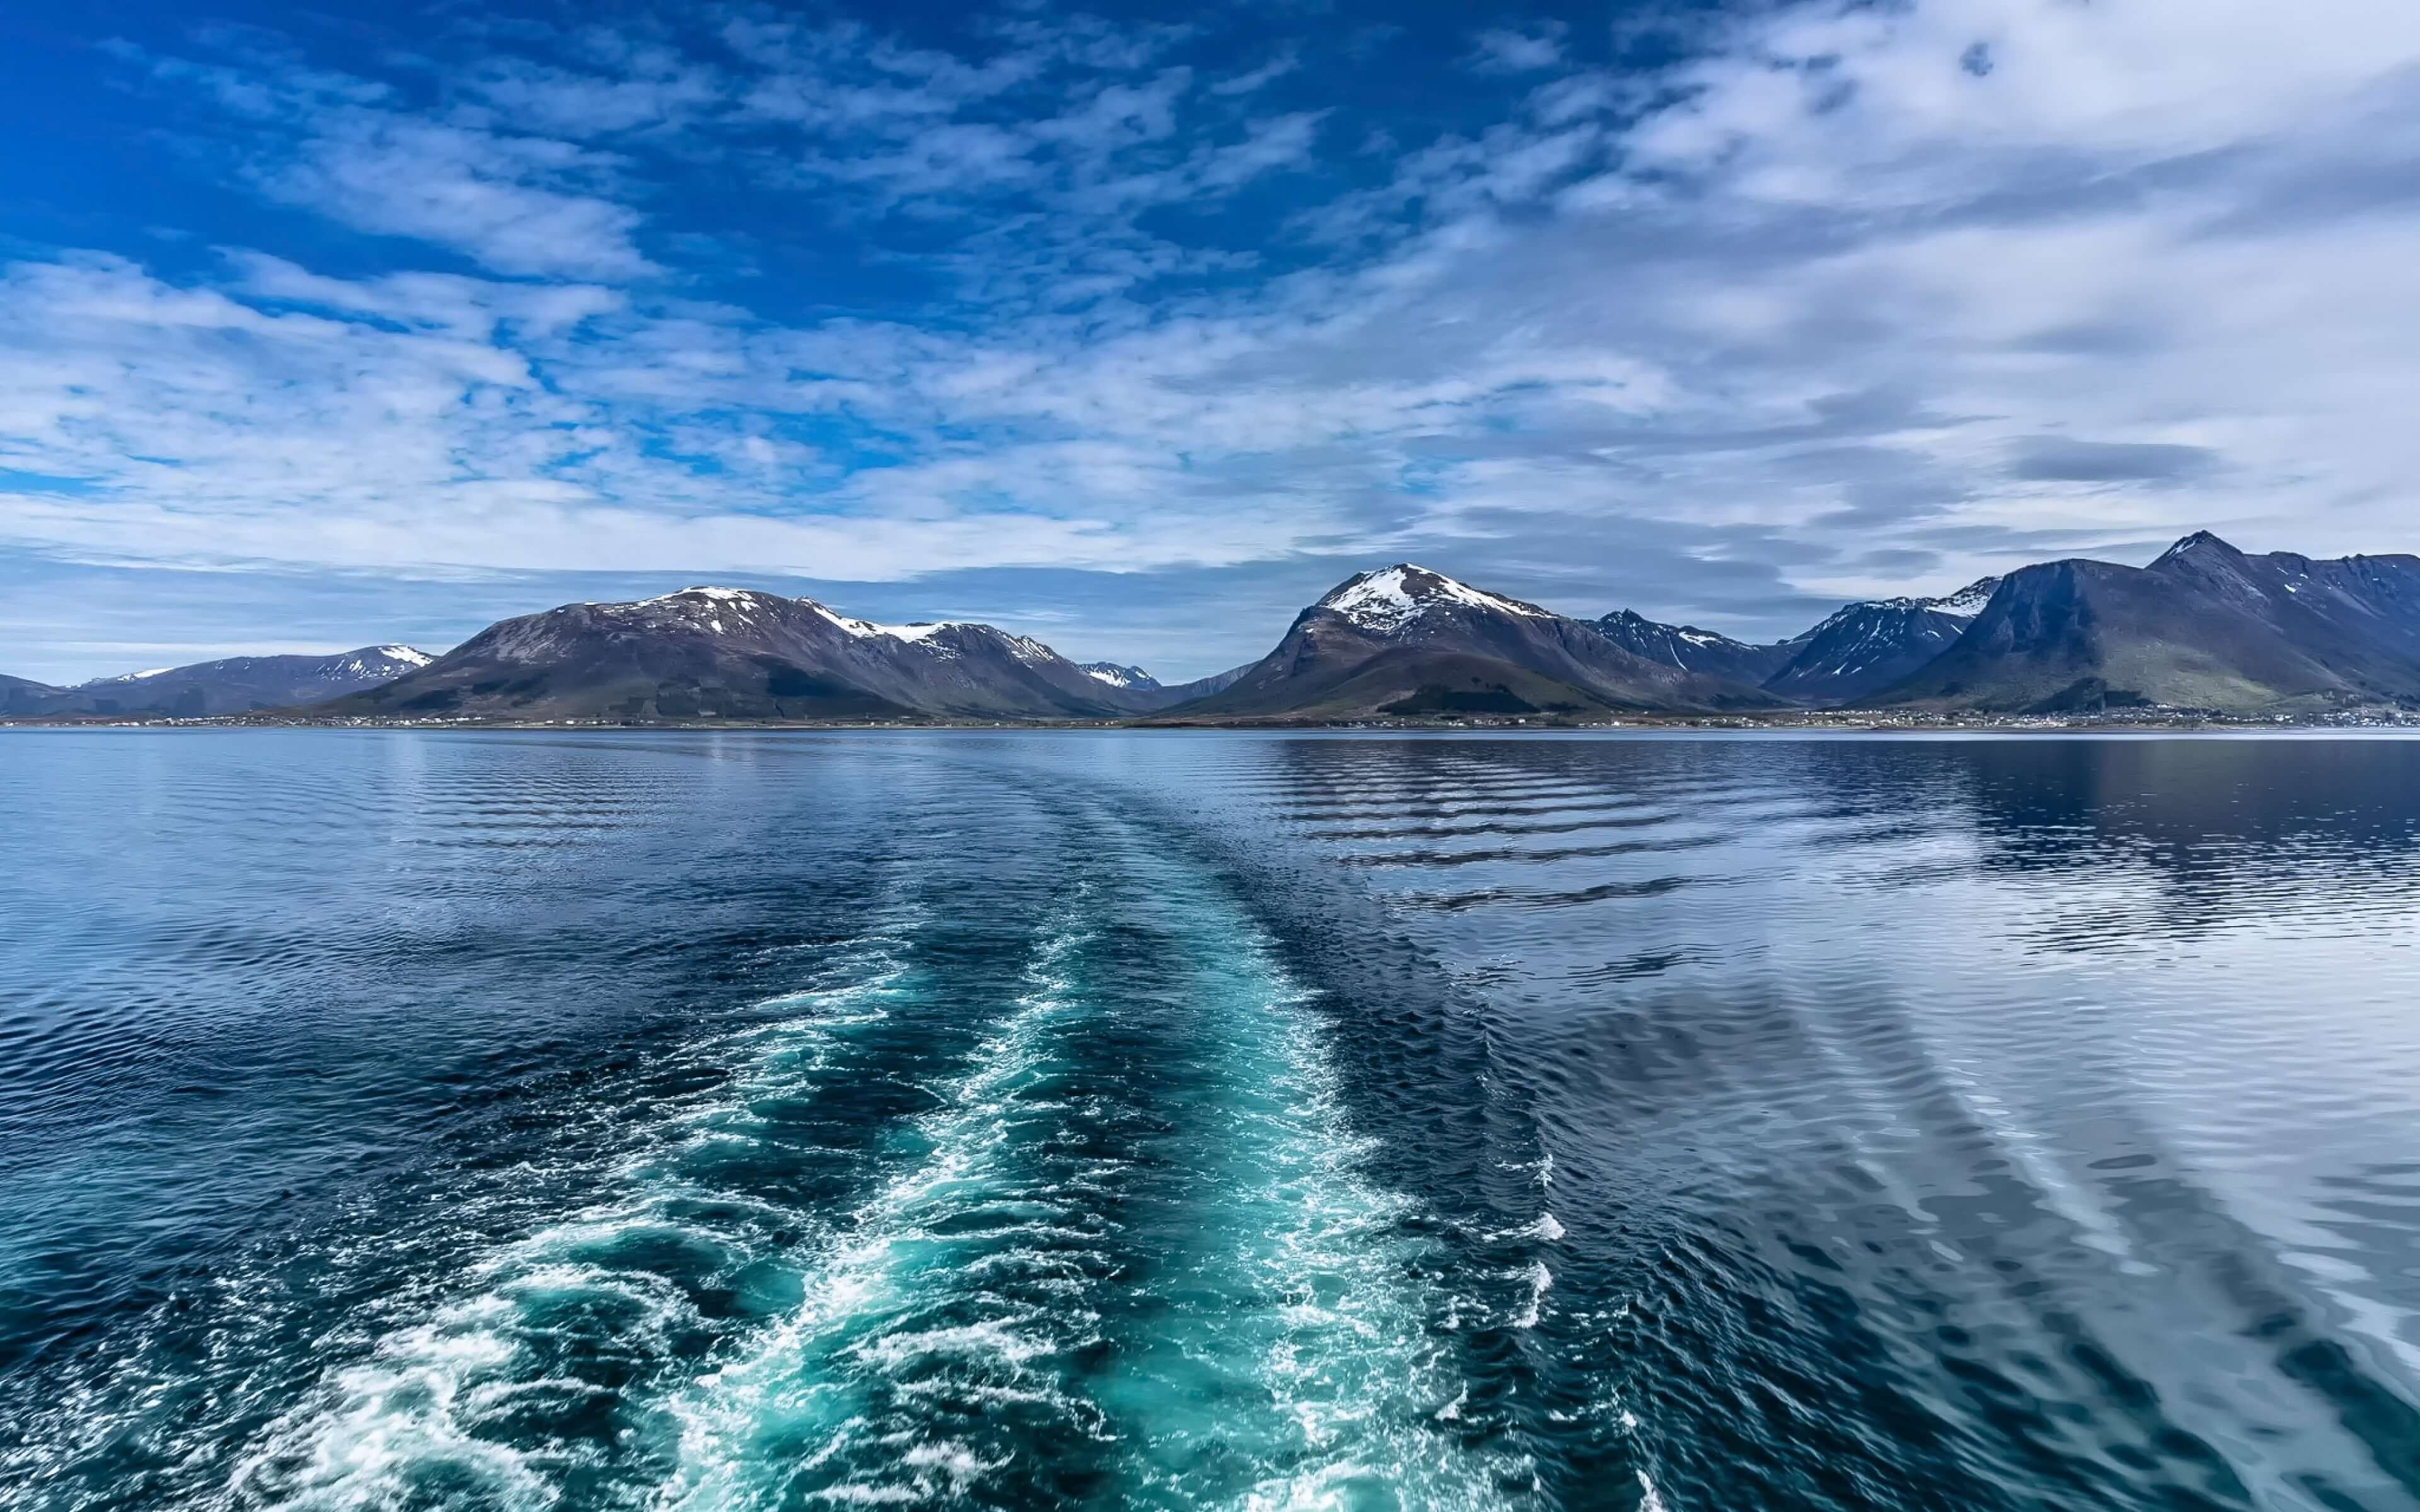 8 реки в океане. Лофотенские острова китовое сафари. Лофотенские острова Норвегия 3840x2160. Рейне Лофотенские острова Норвегия. Согнефьорд Норвегия.